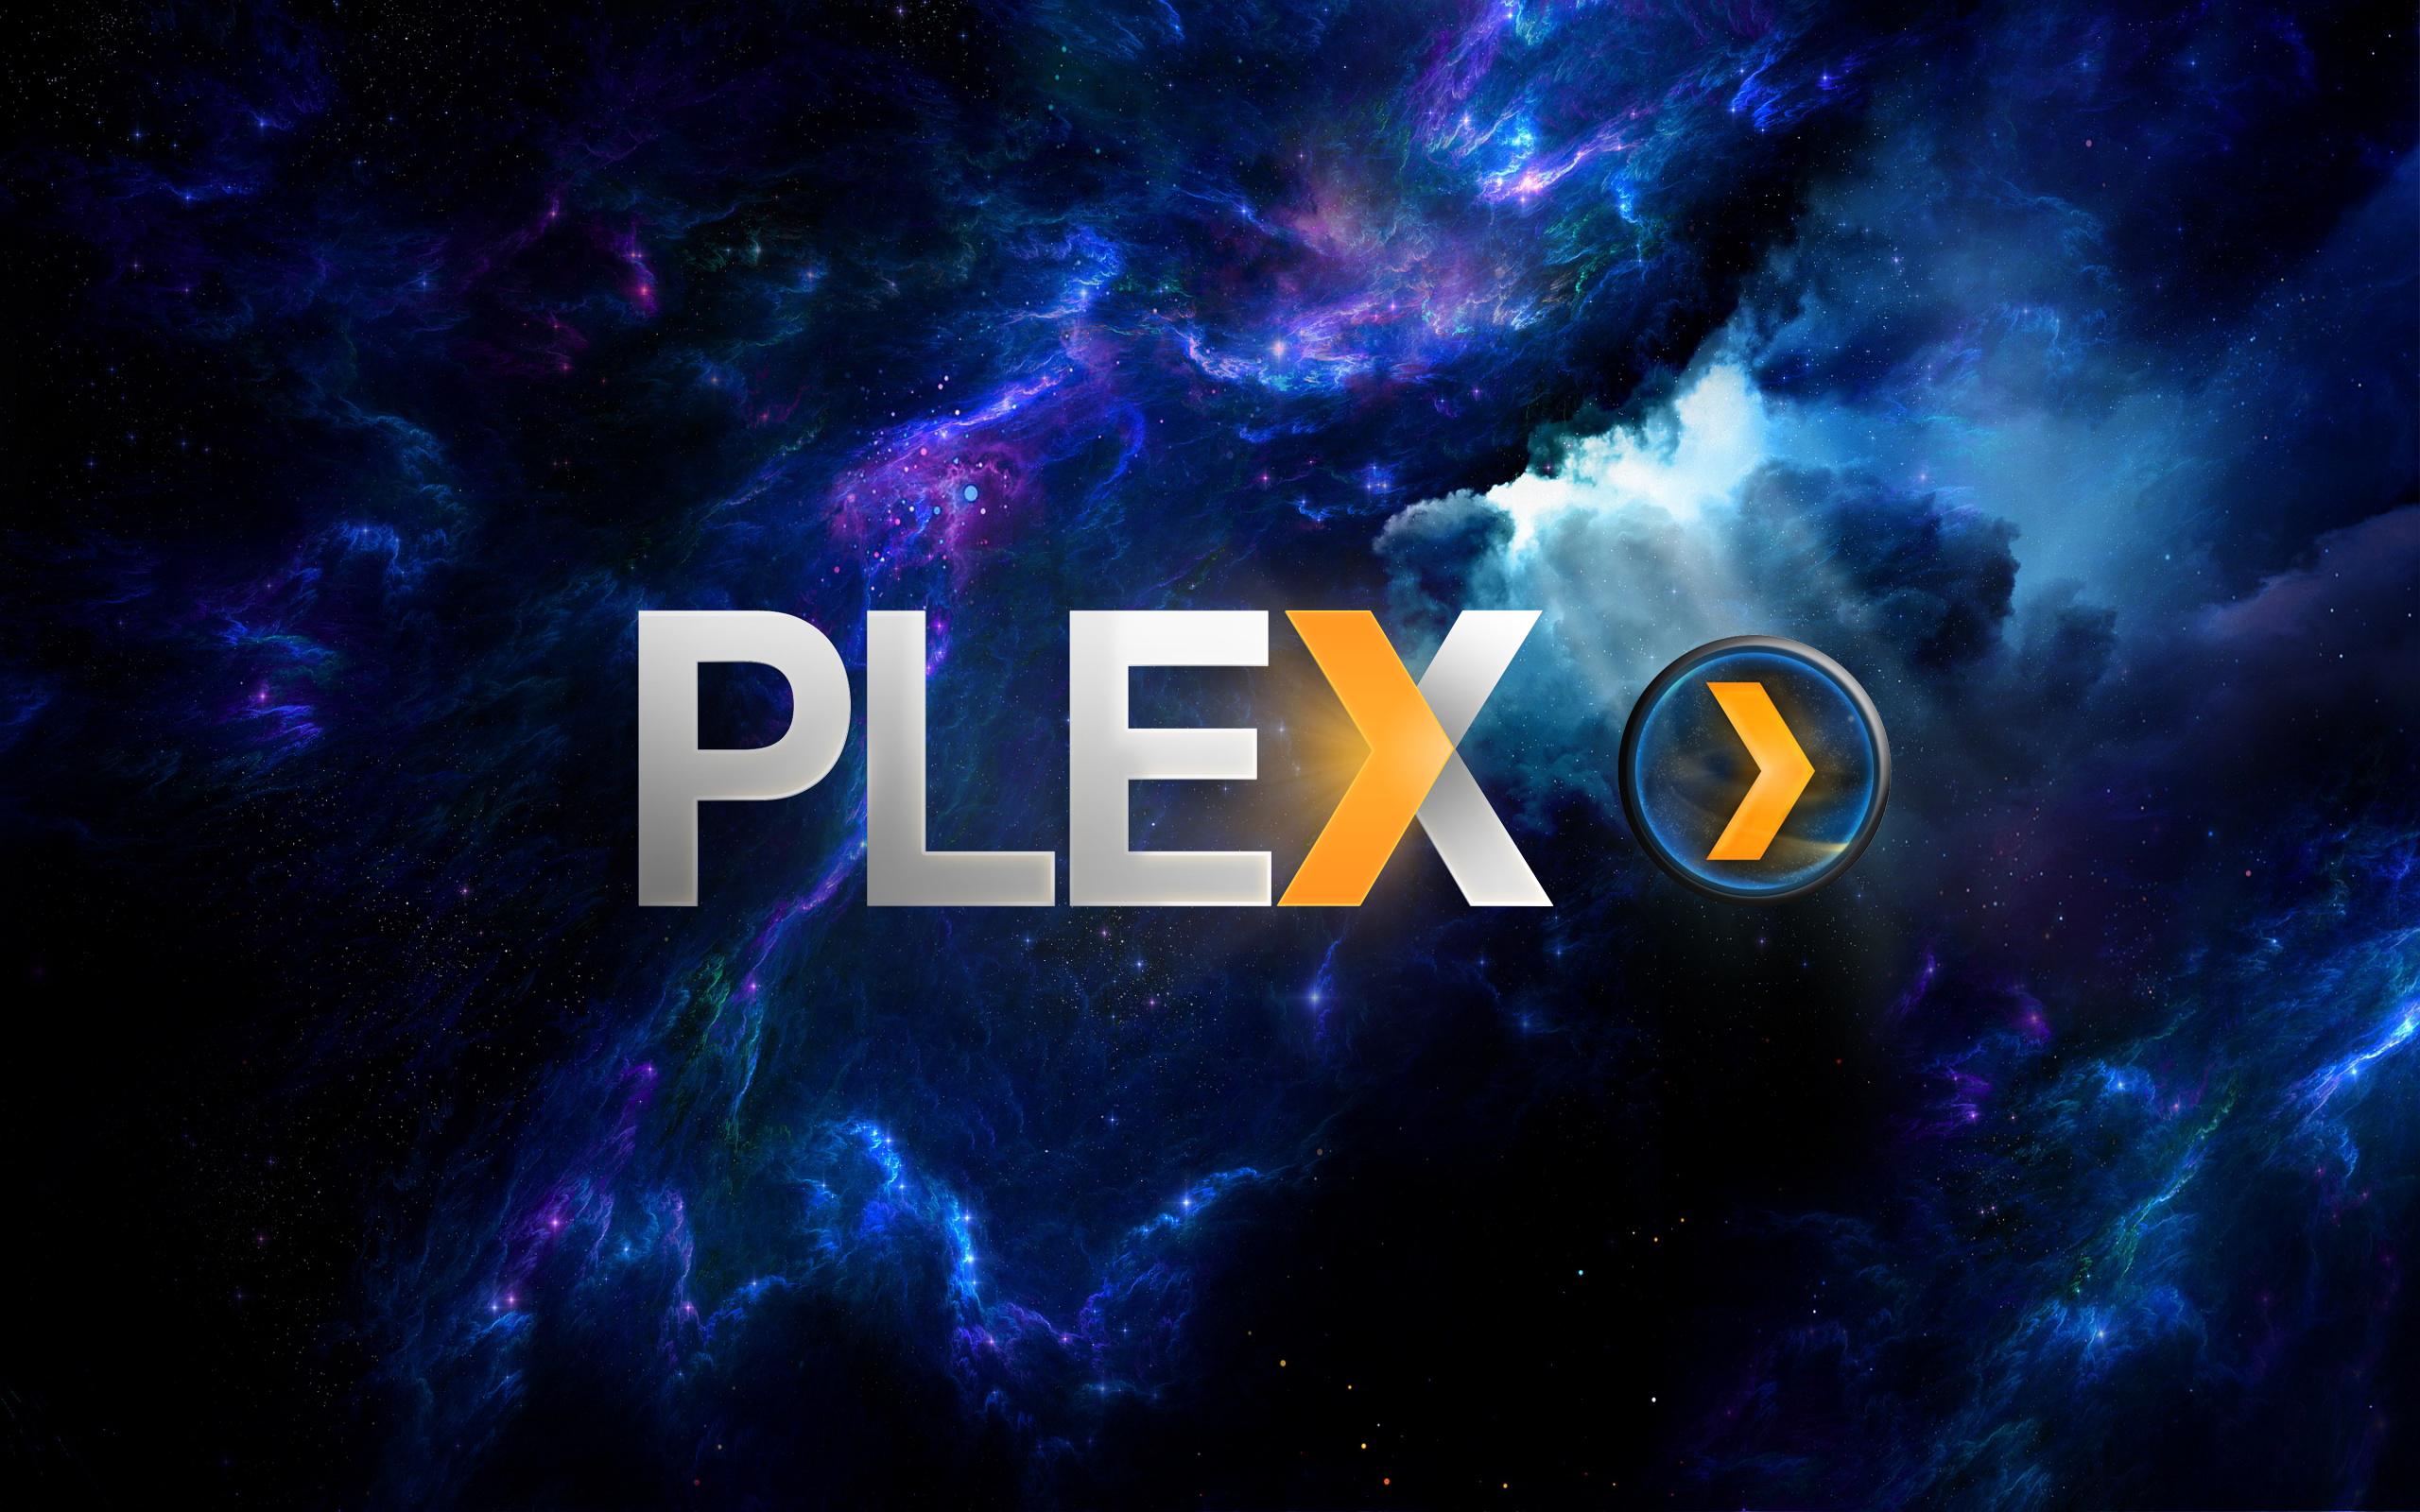 plex free movies download